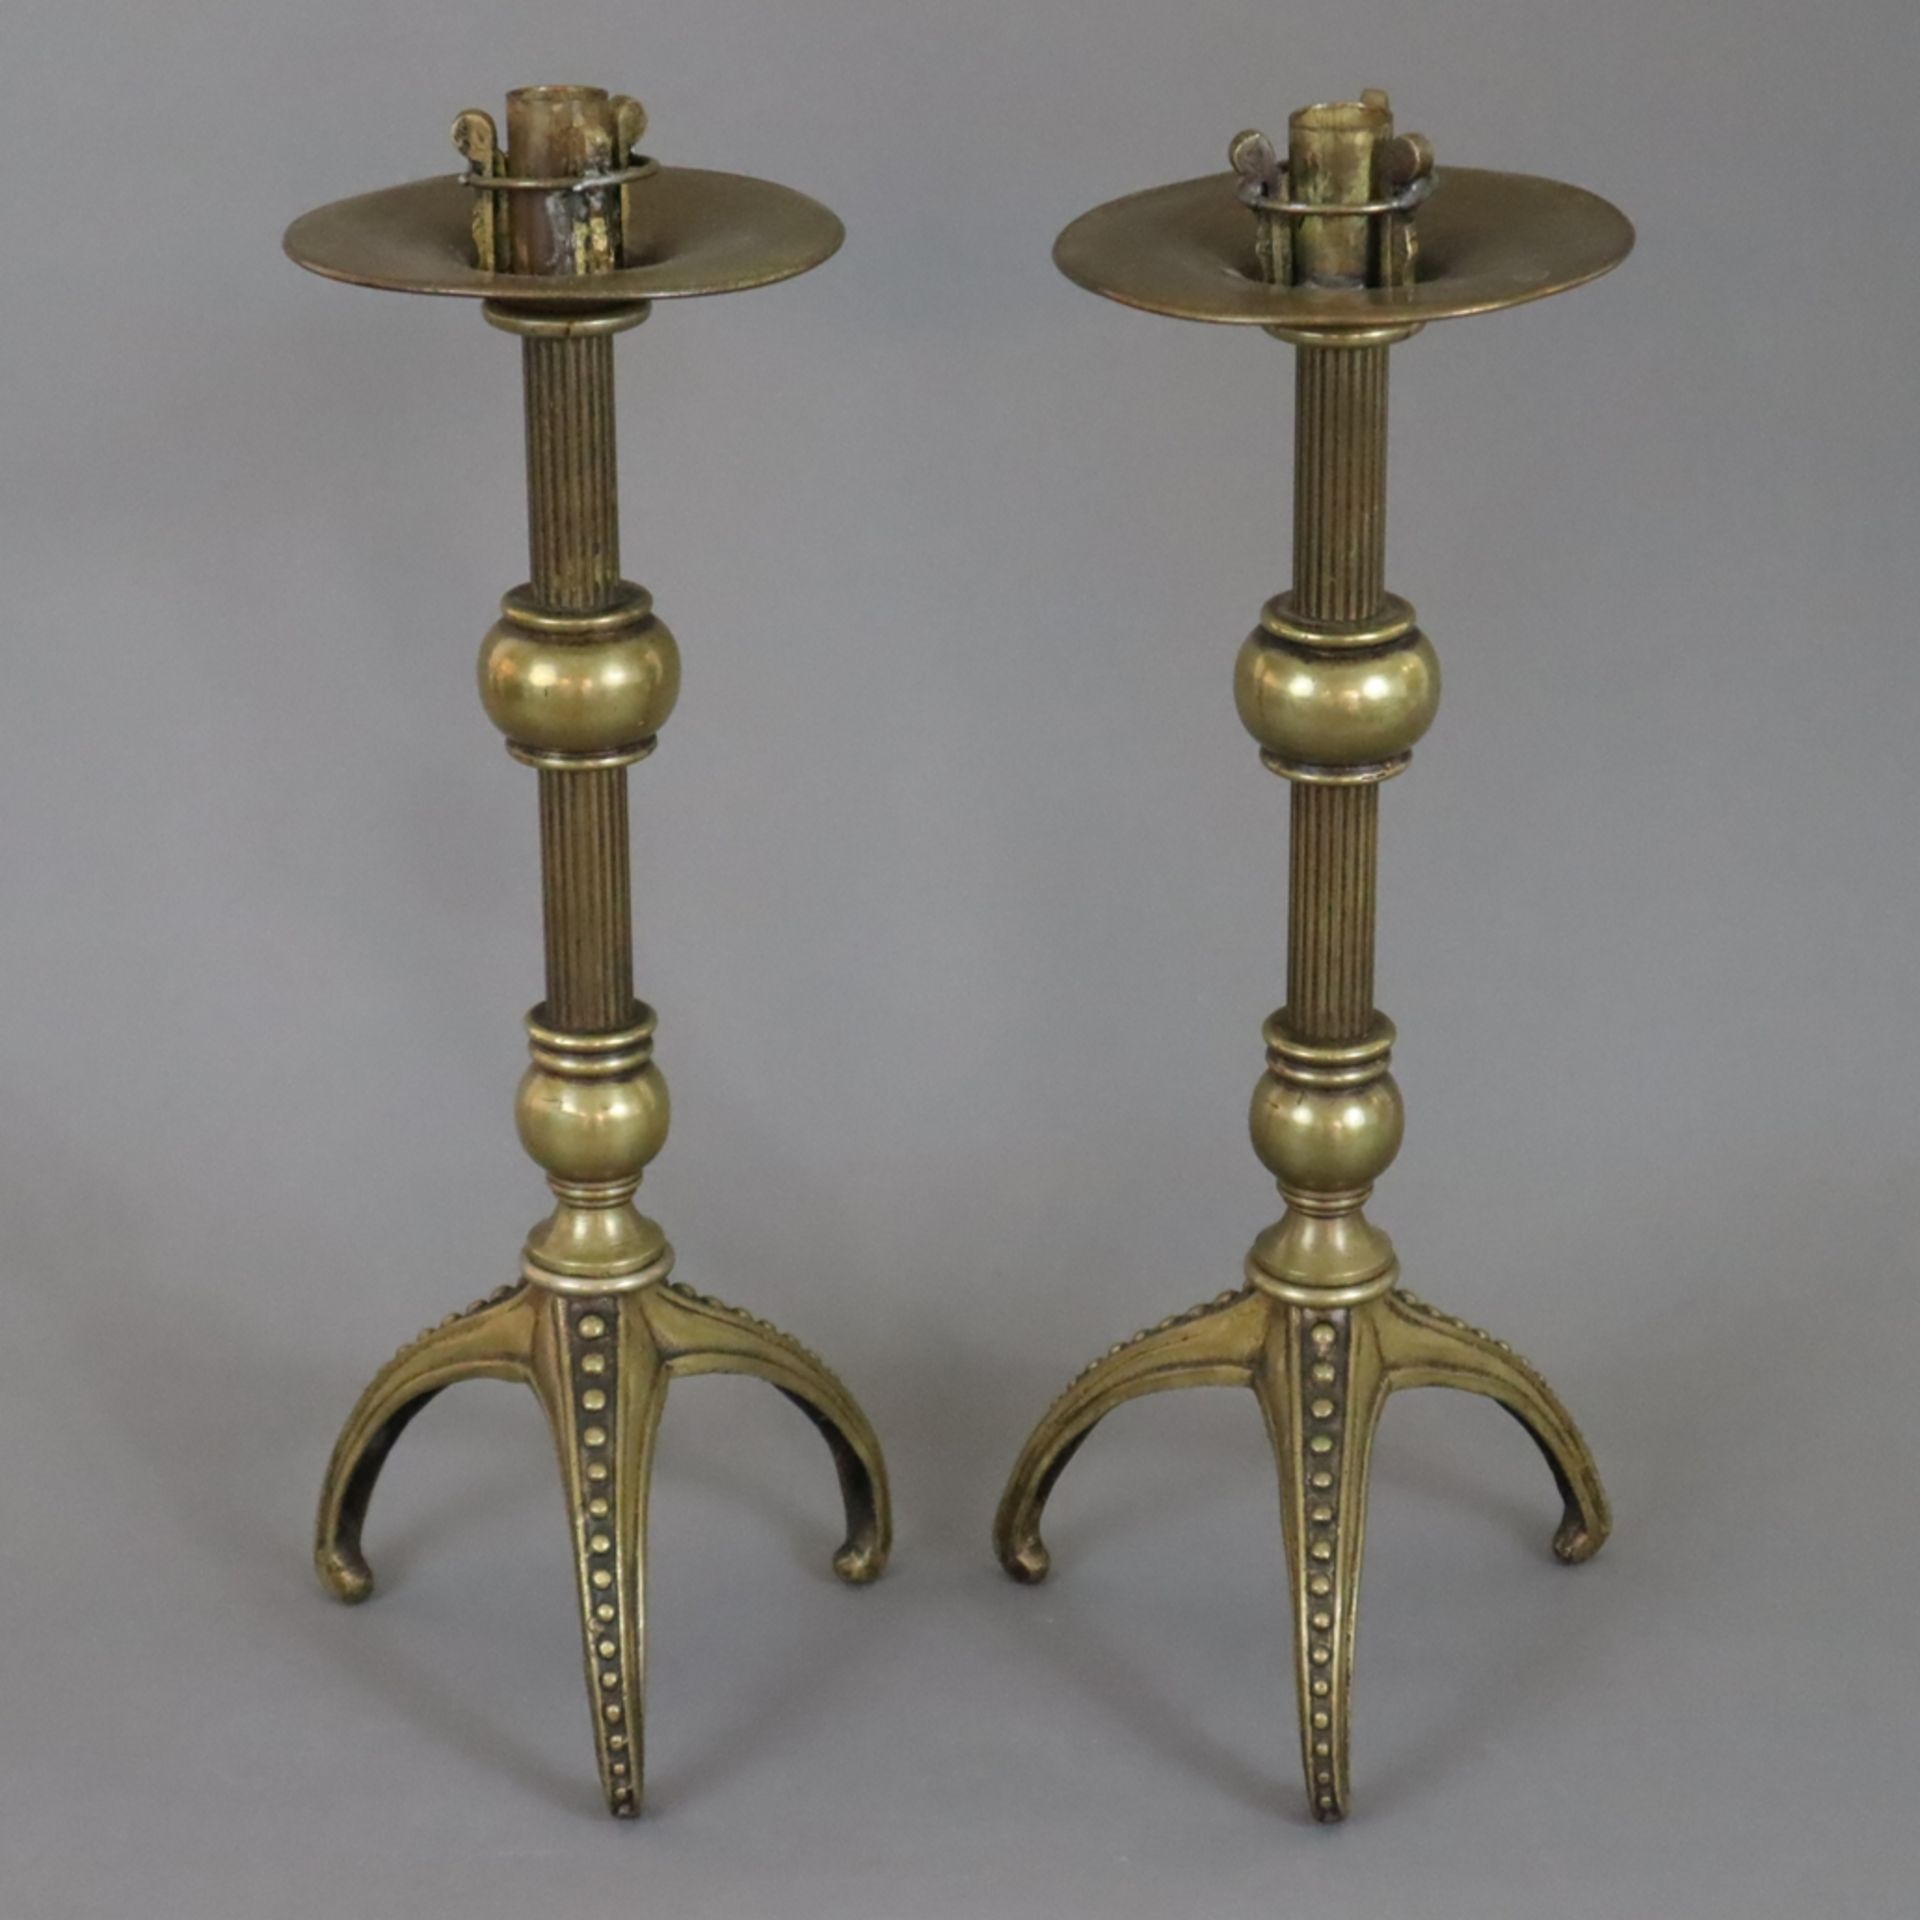 Paar Kerzenleuchter - 19.Jh., Messing, dreibeiniger Fuß, nodierter Säulenschaft, breite Tropfschale